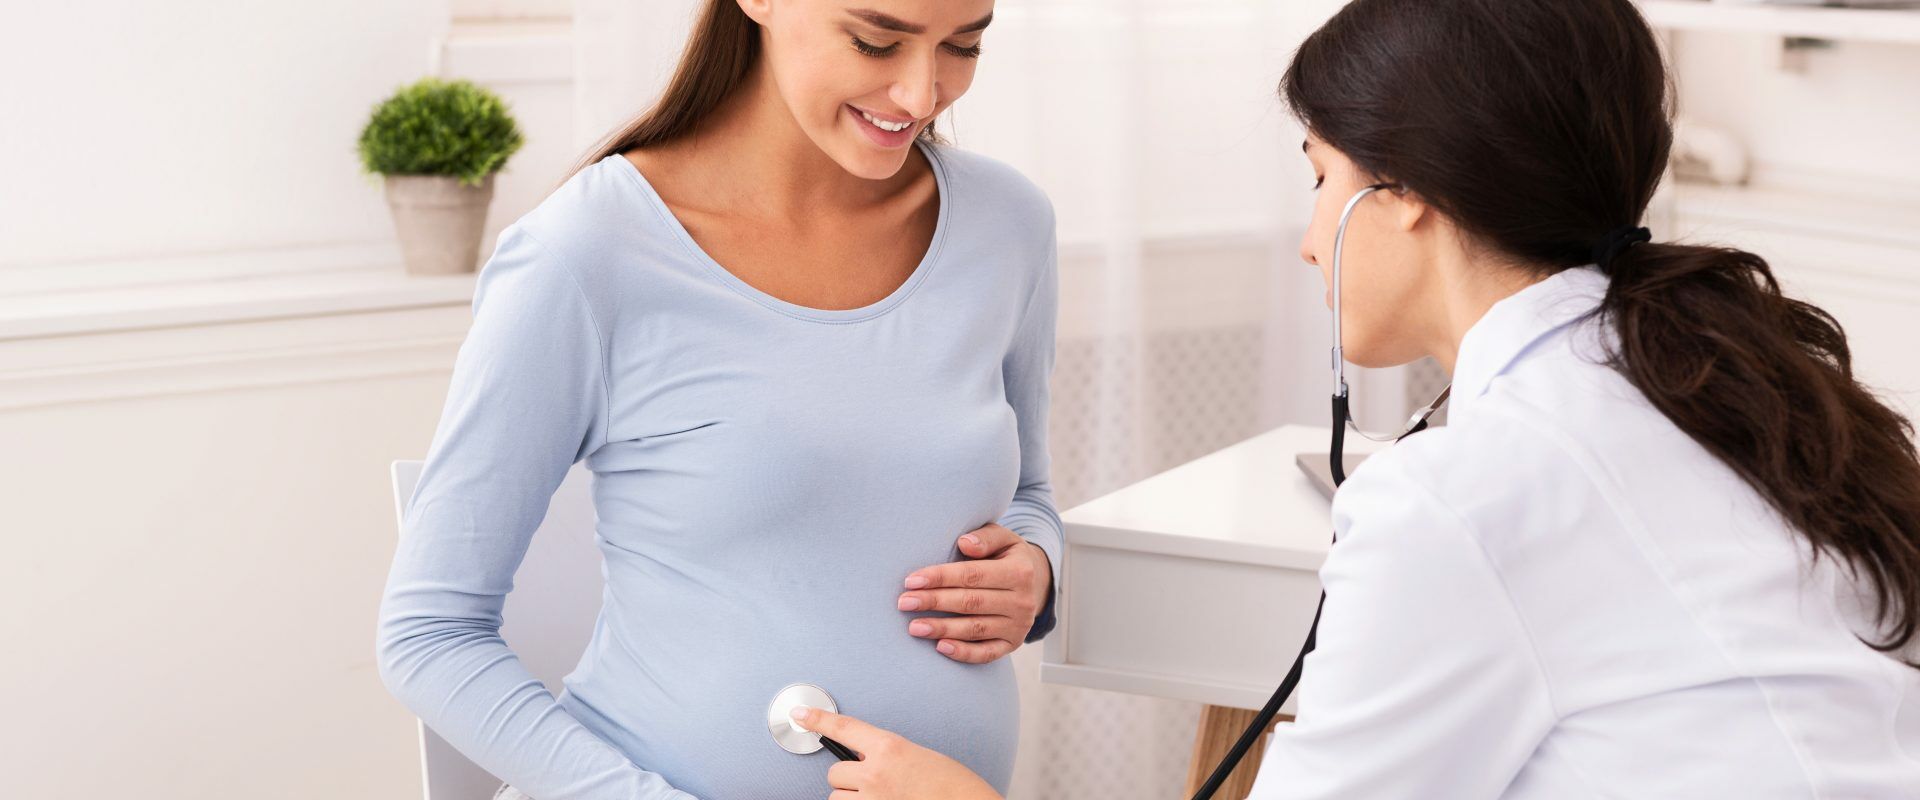 Różyczka jest groźna dla dzieci w ciąży. Kobieta ciężarna na wizycie w gabinecie lekarskim podczas badania.